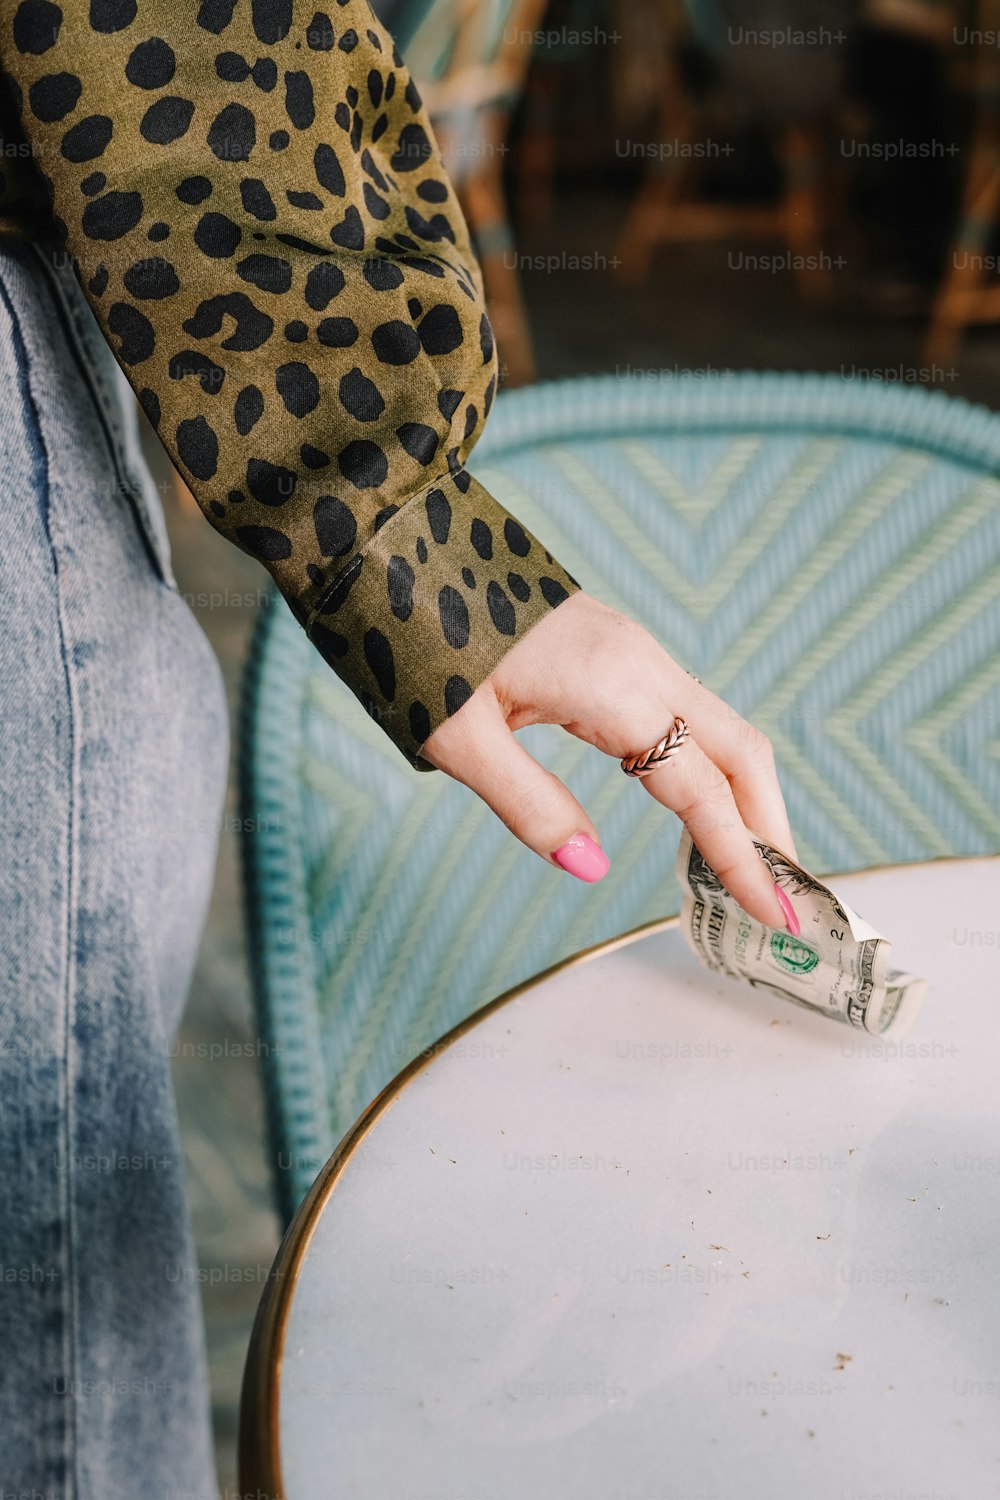 La mano de una mujer buscando una pila de dinero